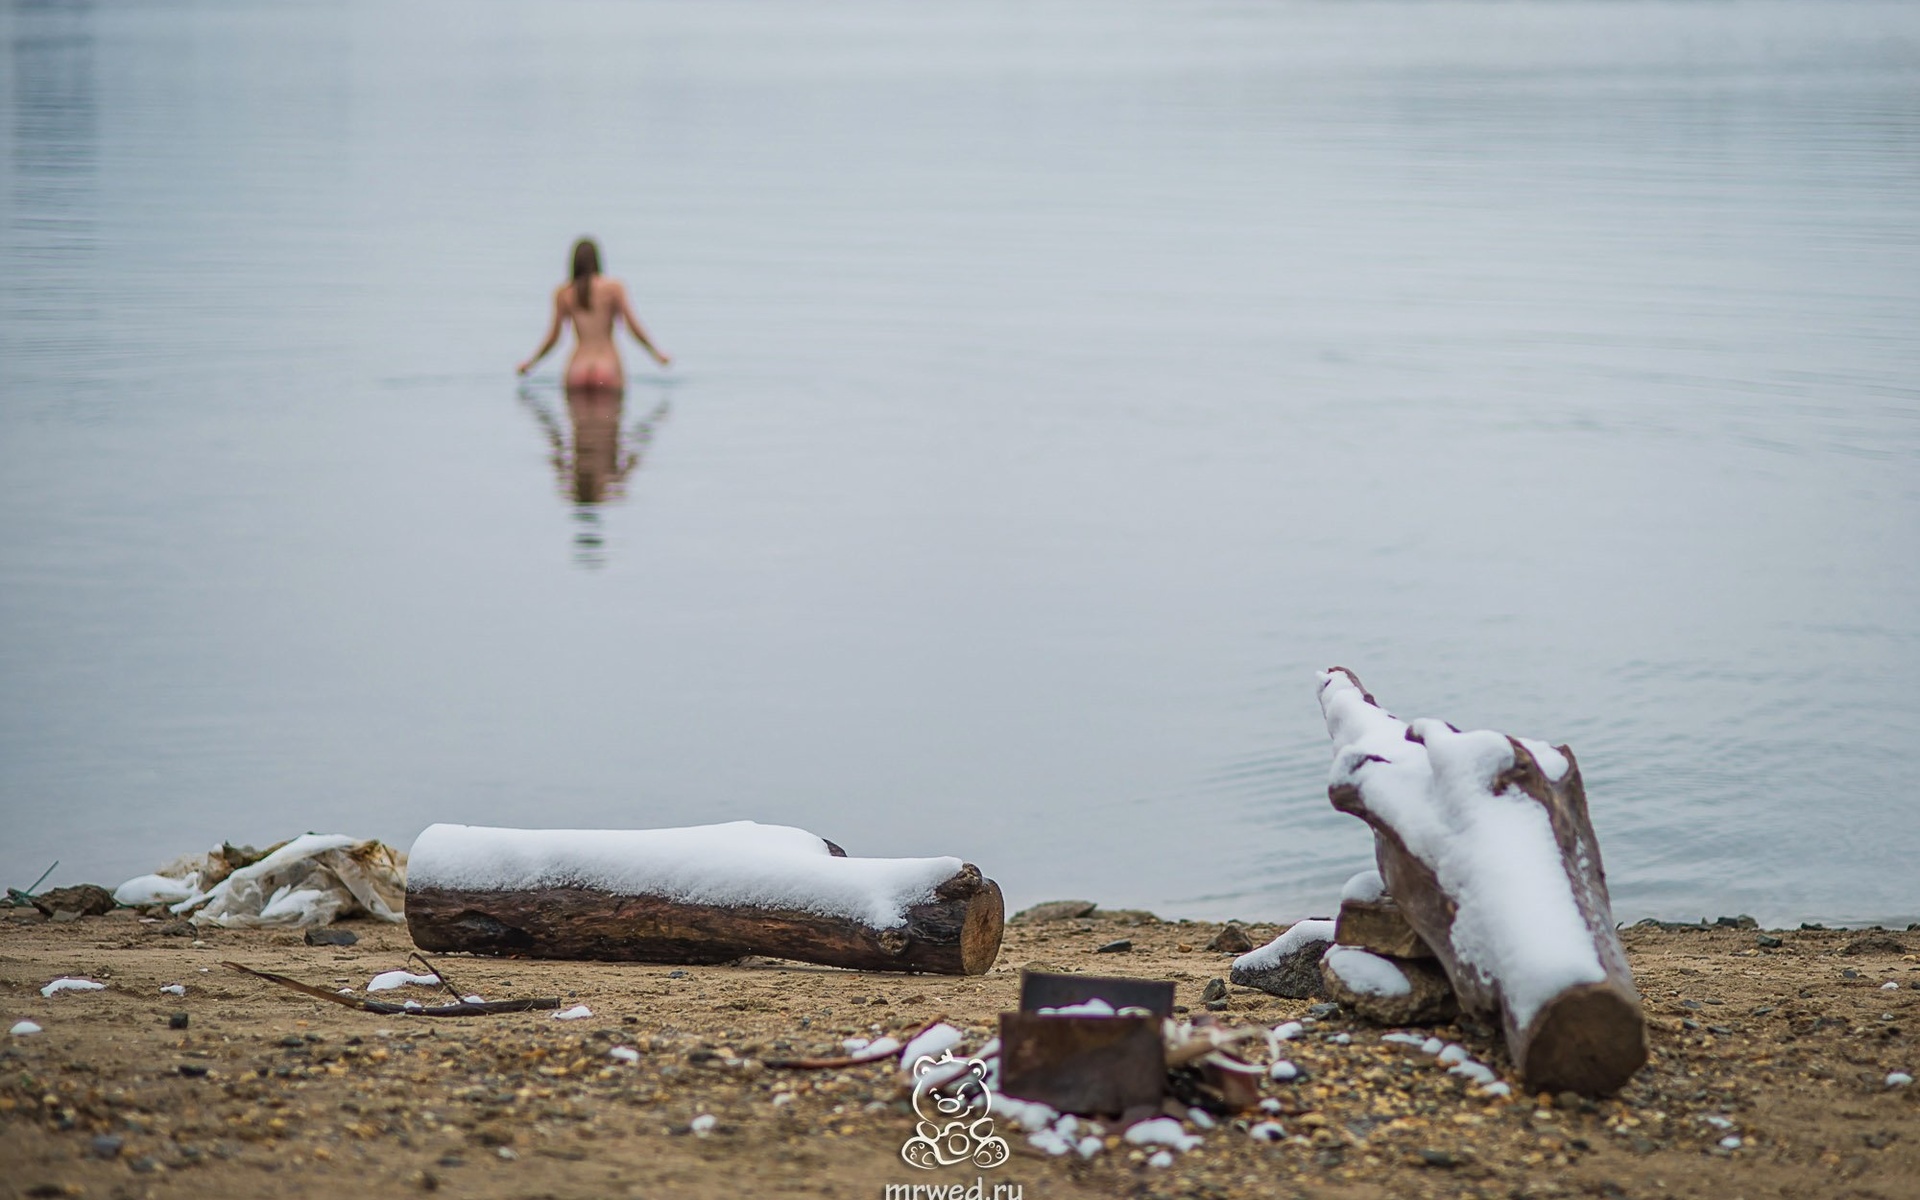 Картинки девушка, купается, в, речке, голая, эротика - обои 1920x1200,  картинка №549645